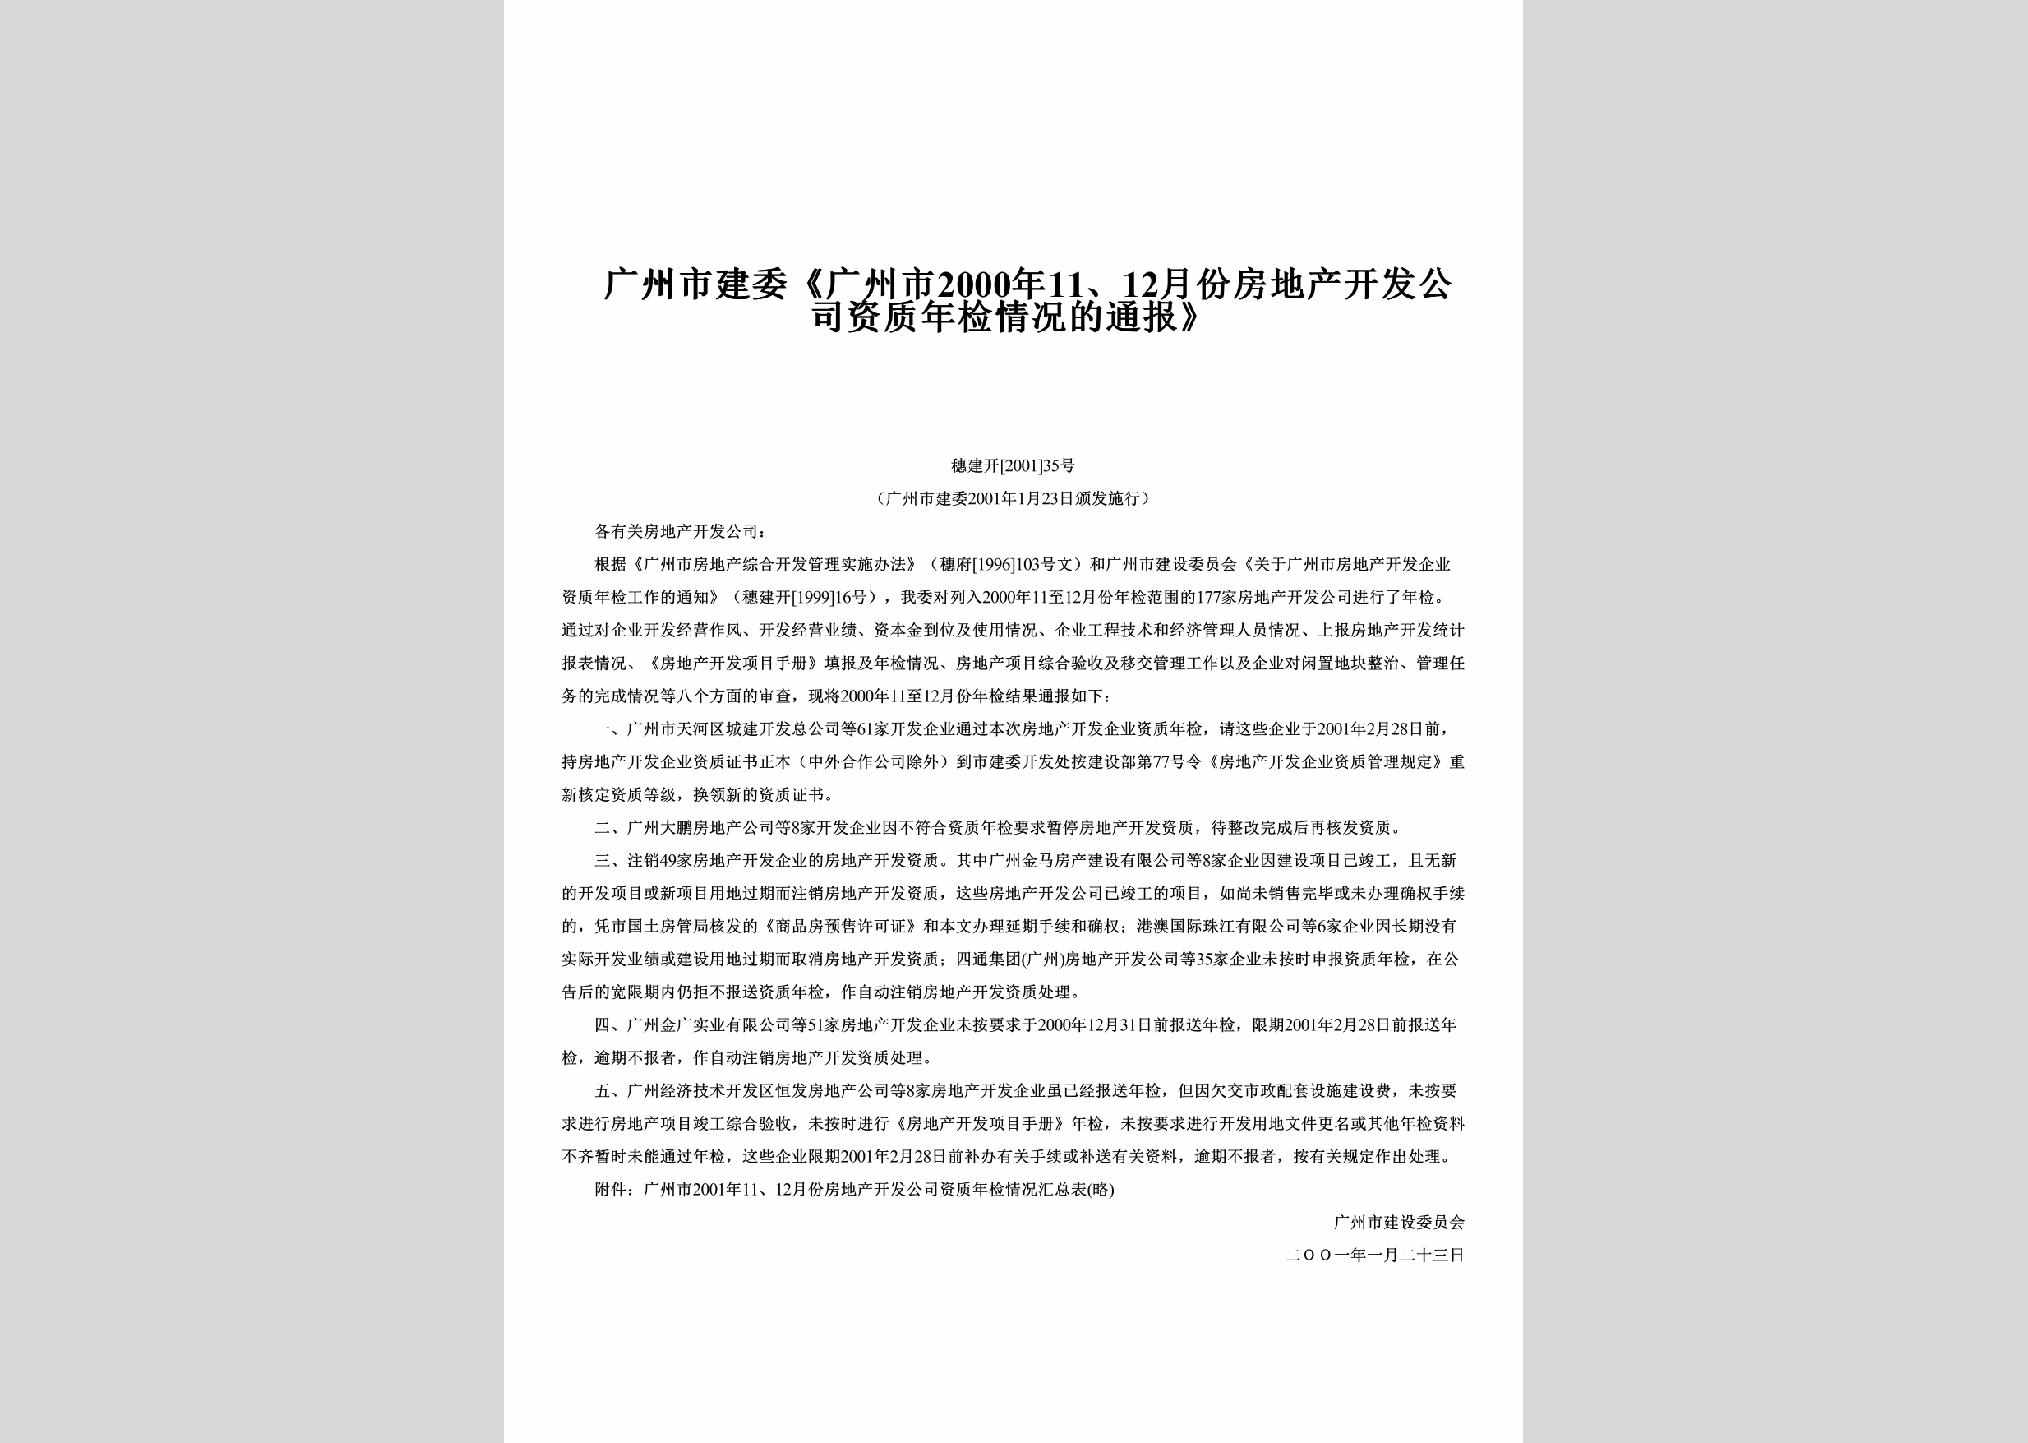 穗建开[2001]35号：《广州市2000年11、12月份房地产开发公司资质年检情况的通报》